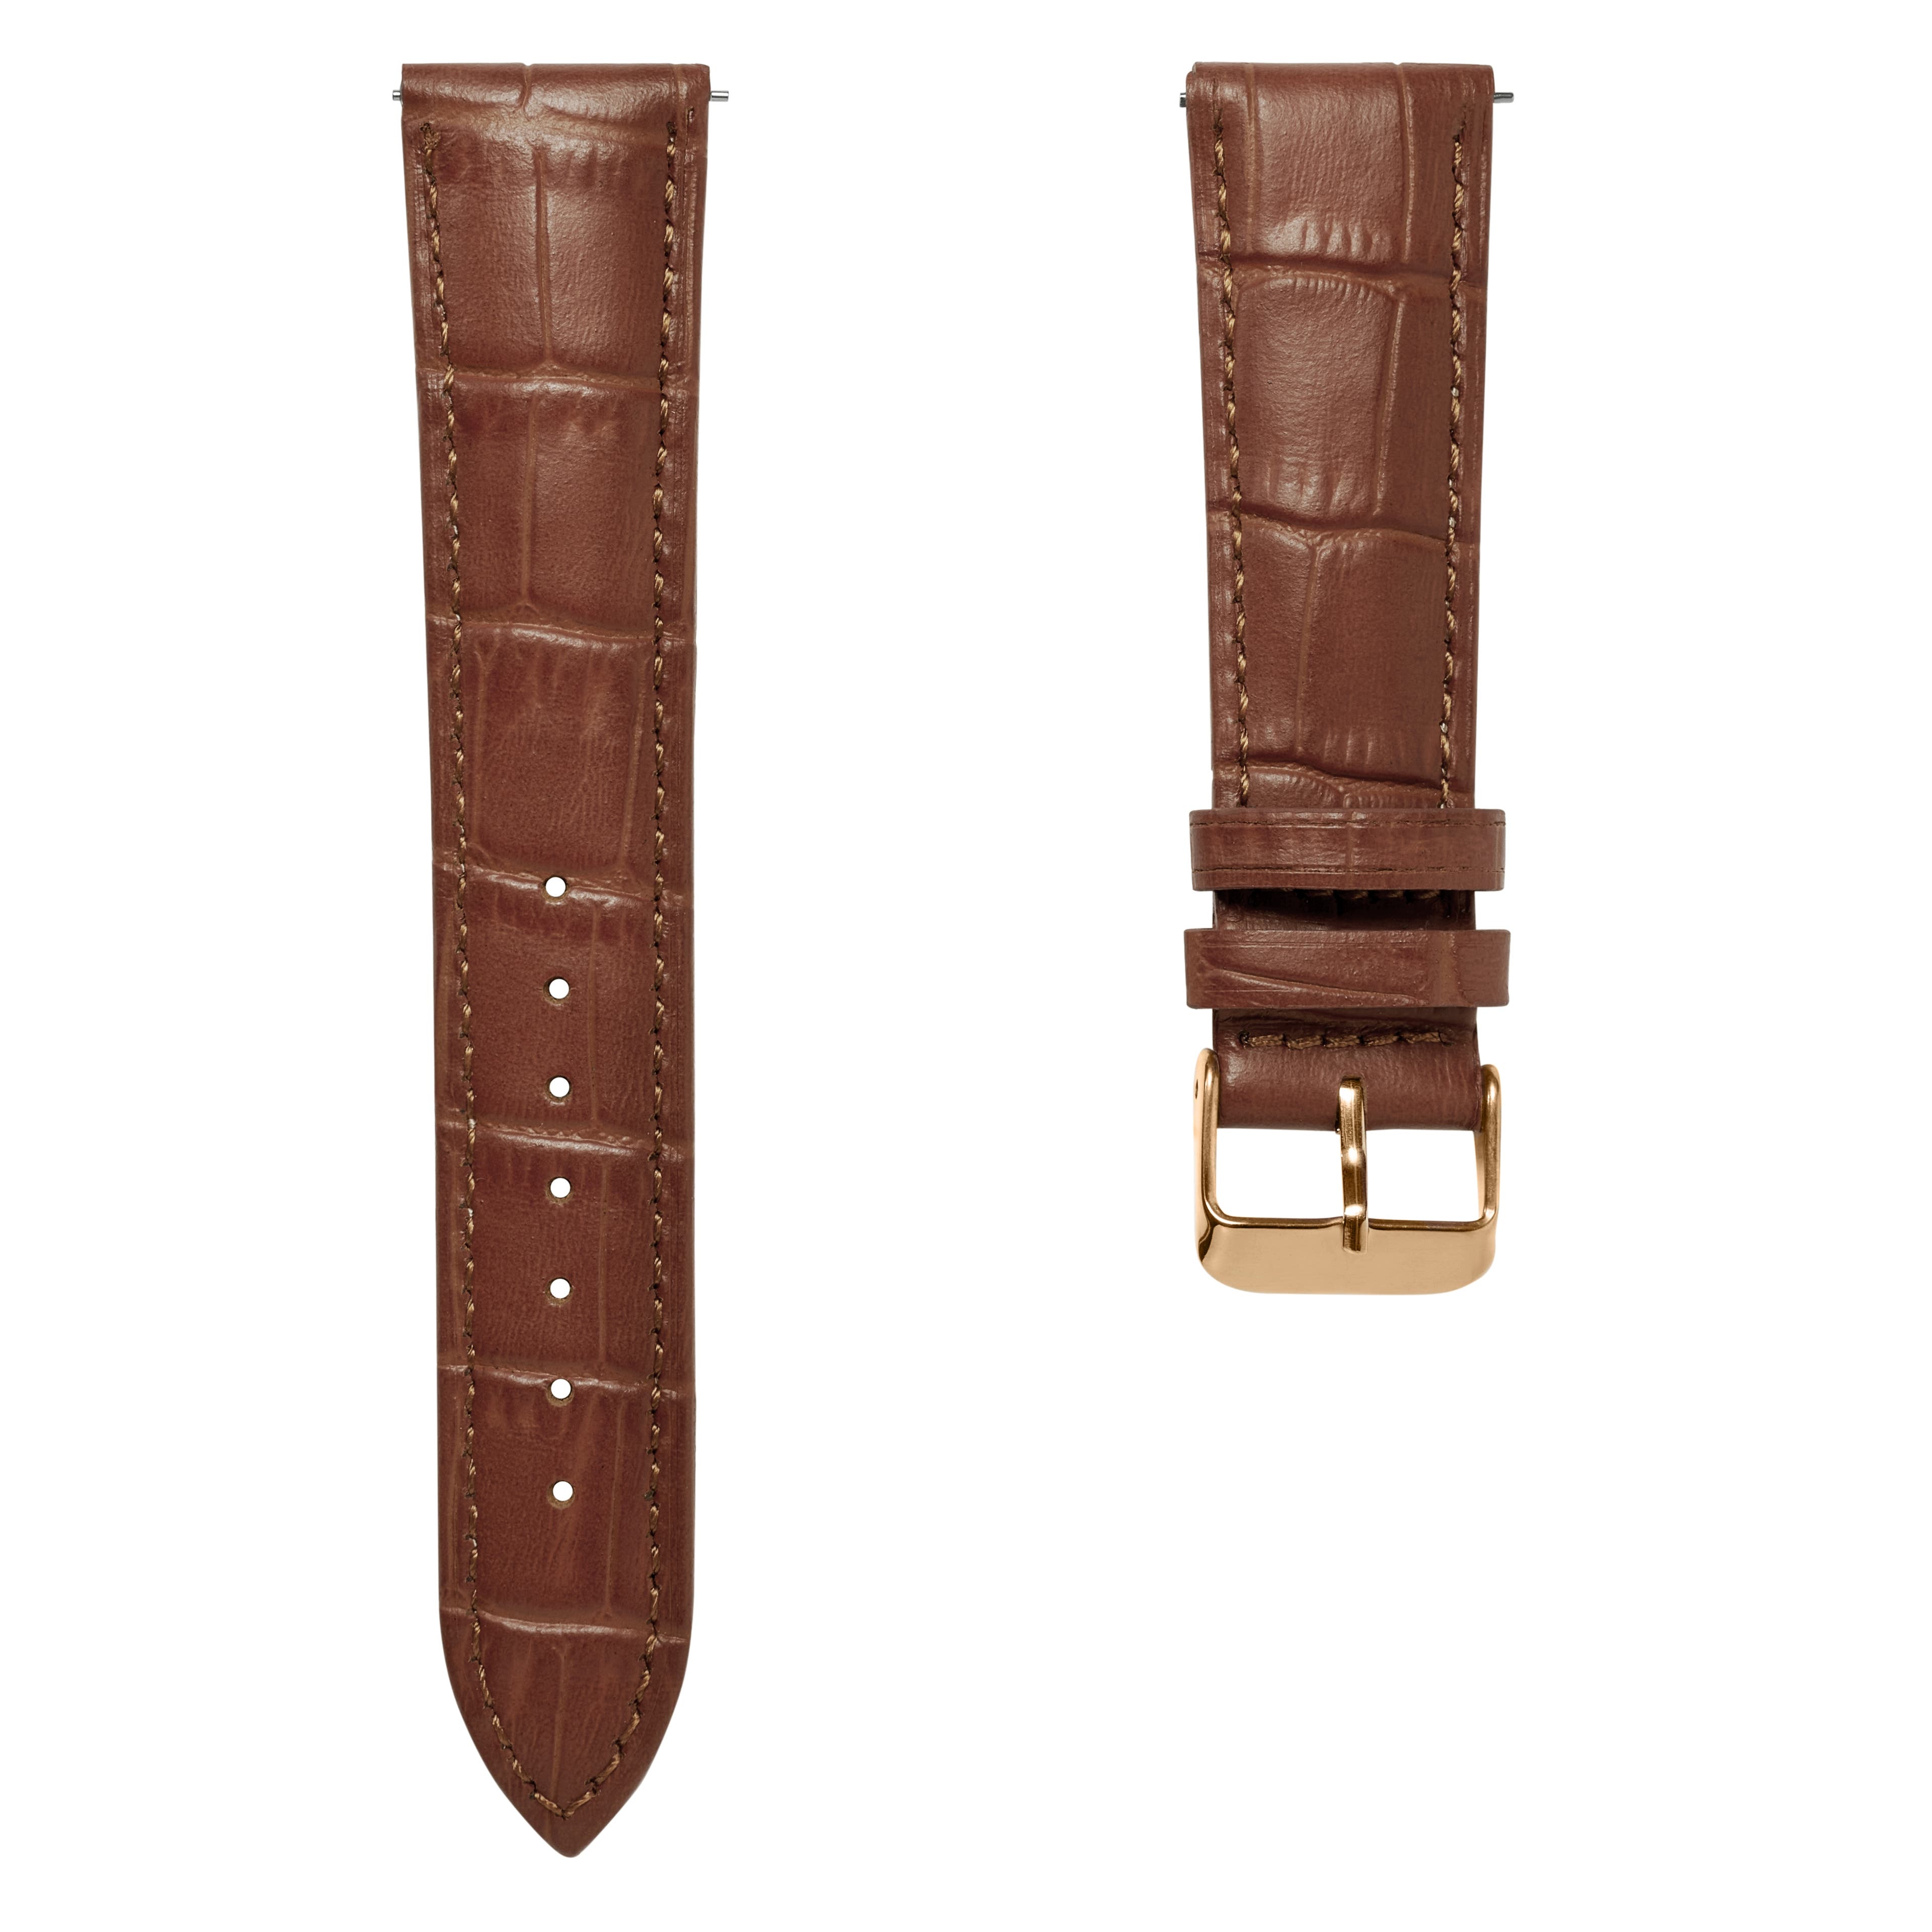 Bracelet de montre en cuir brun havane gaufré à motif crocodile 24 mm avec boucle rose gold - Attache rapide